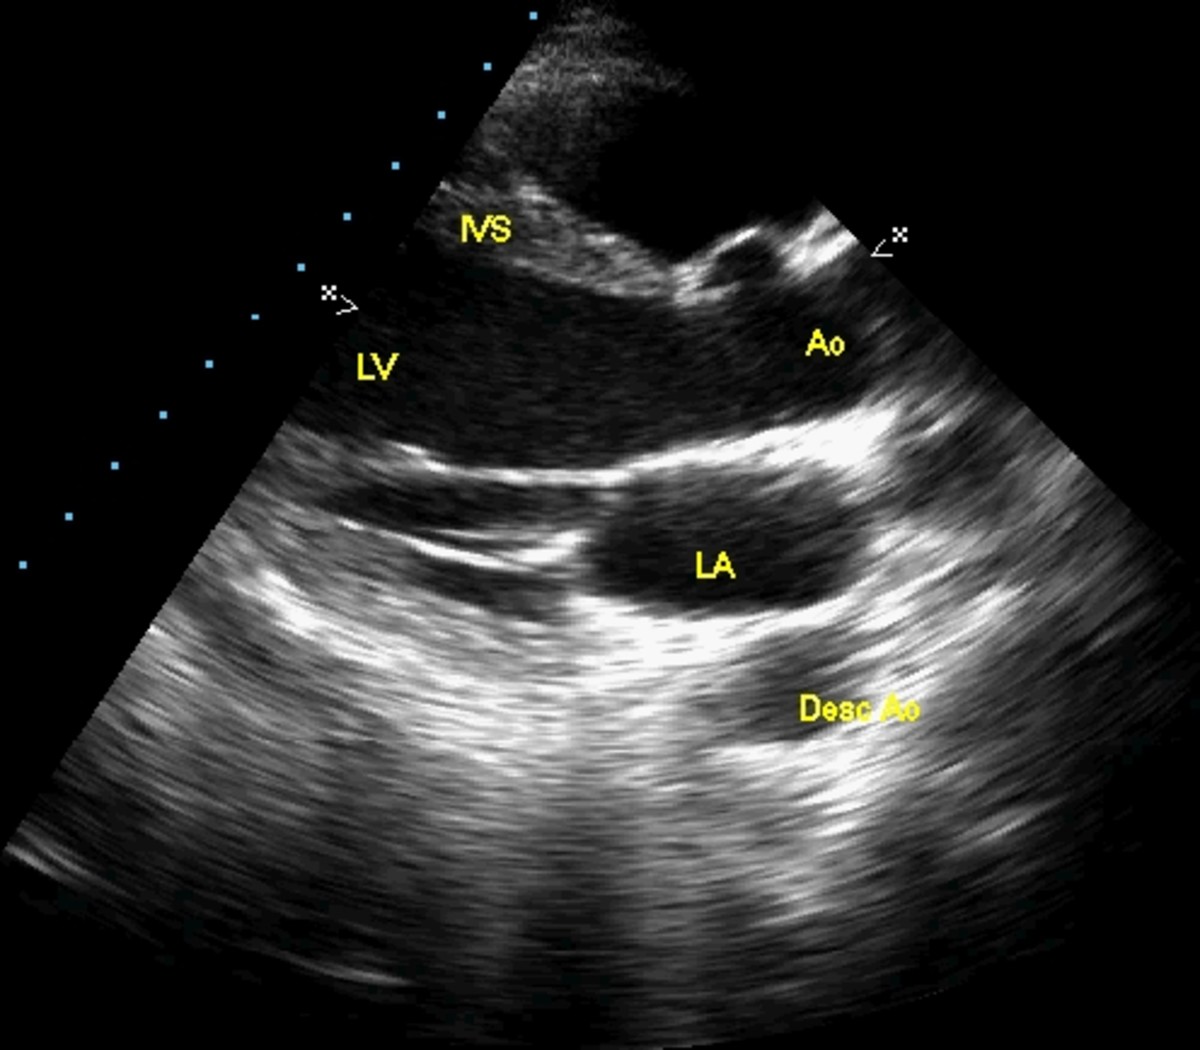 IVS - Interventricular Septum, LV - Left Ventricle, AO - Aorta, LA - Left Atrium, DAO - Descending Aorta